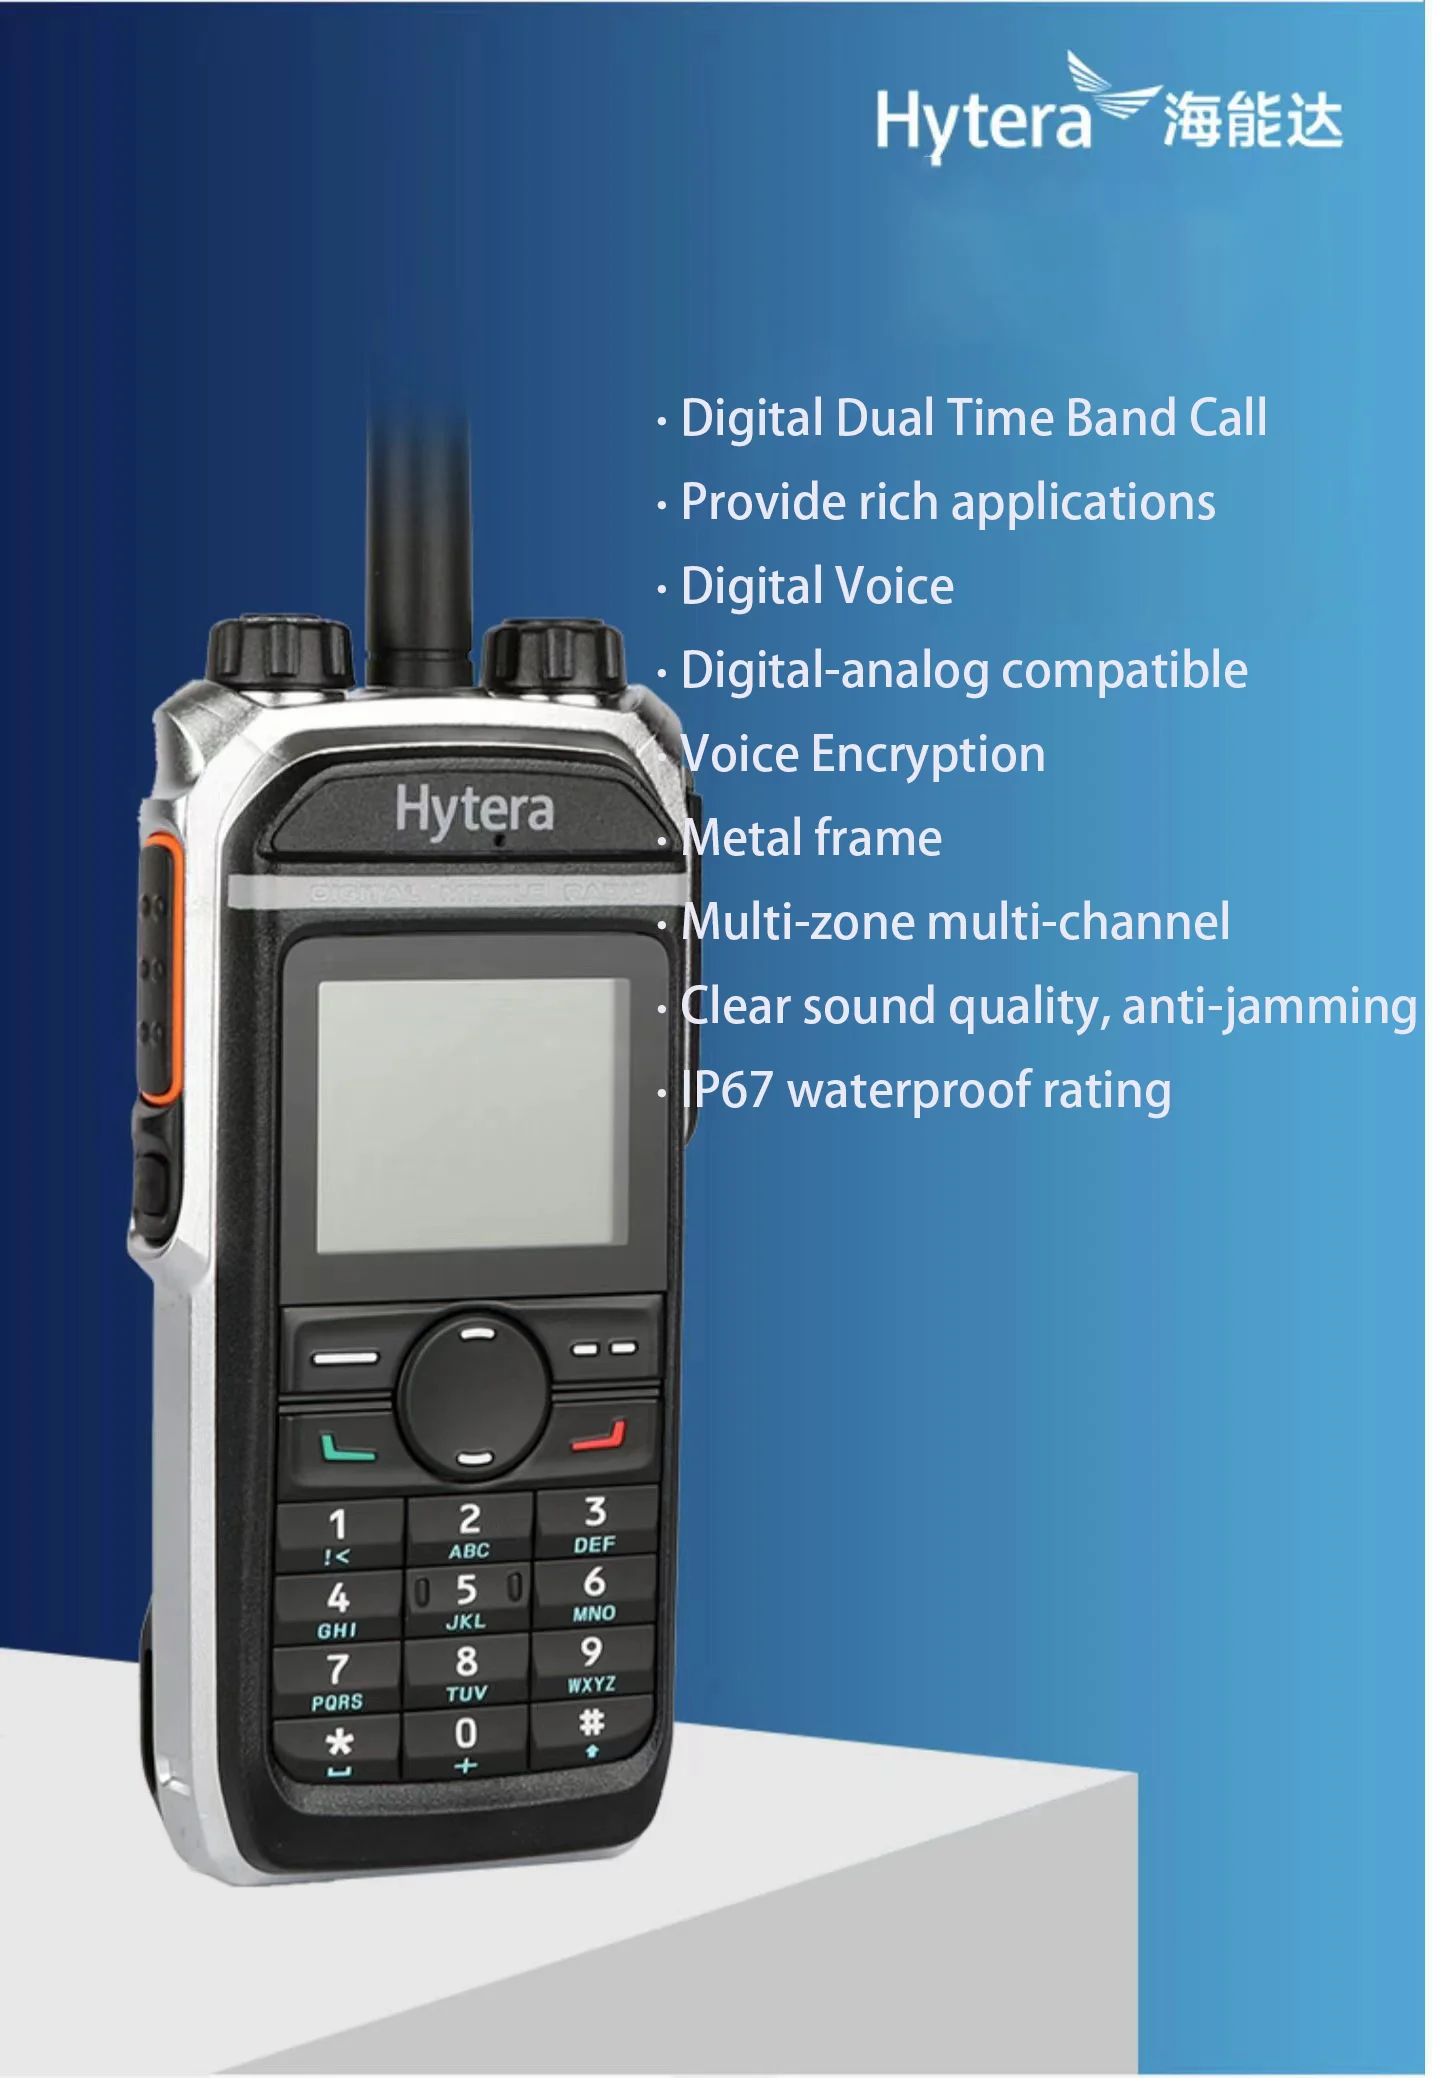 Hytera PD680/685 waterproof two-way radio ptt walkie-talkie digital two way radio dmr walkie talkie long range